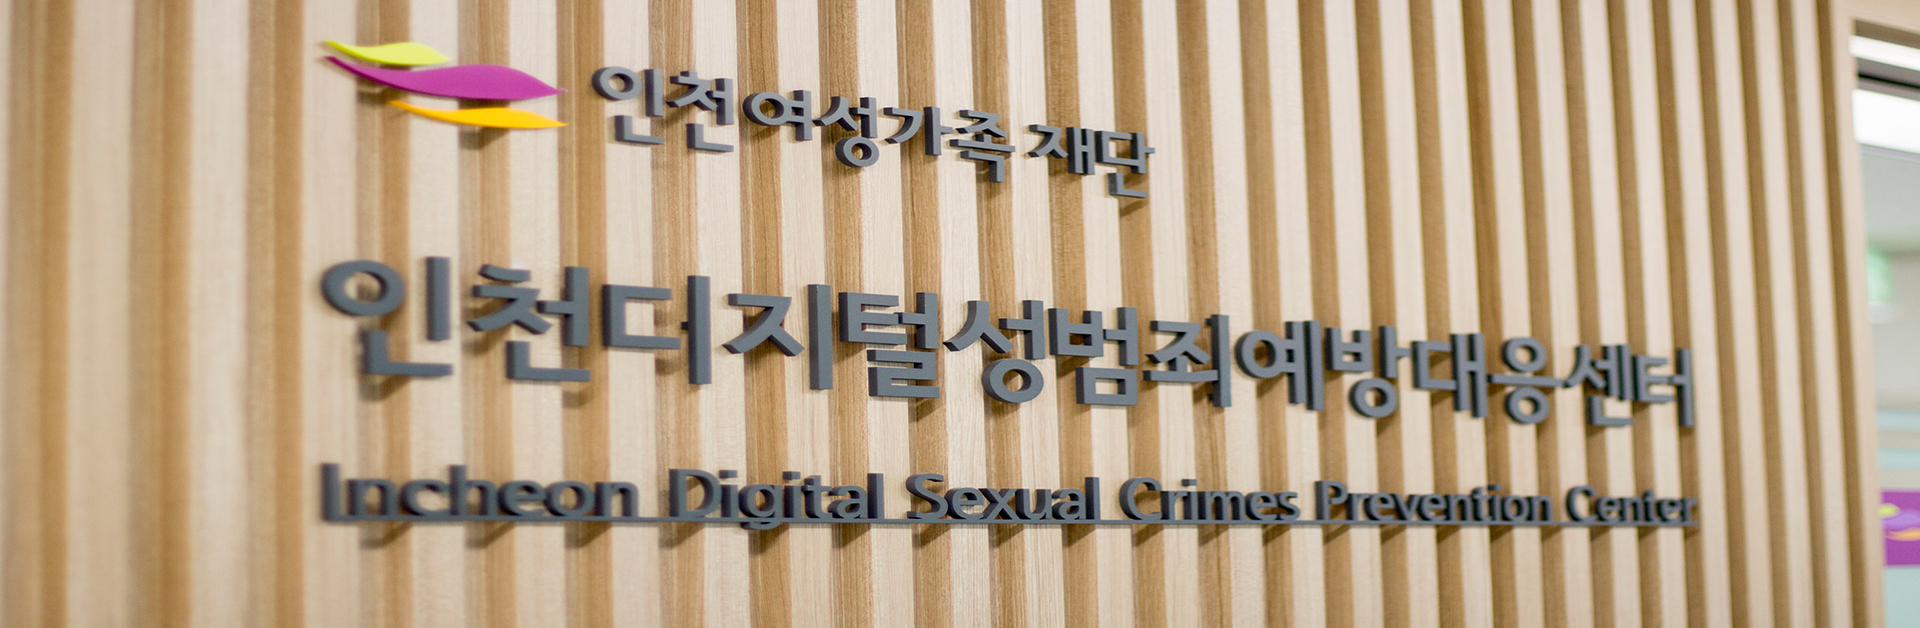 인천디지털성범죄예방대응센터 입구사진